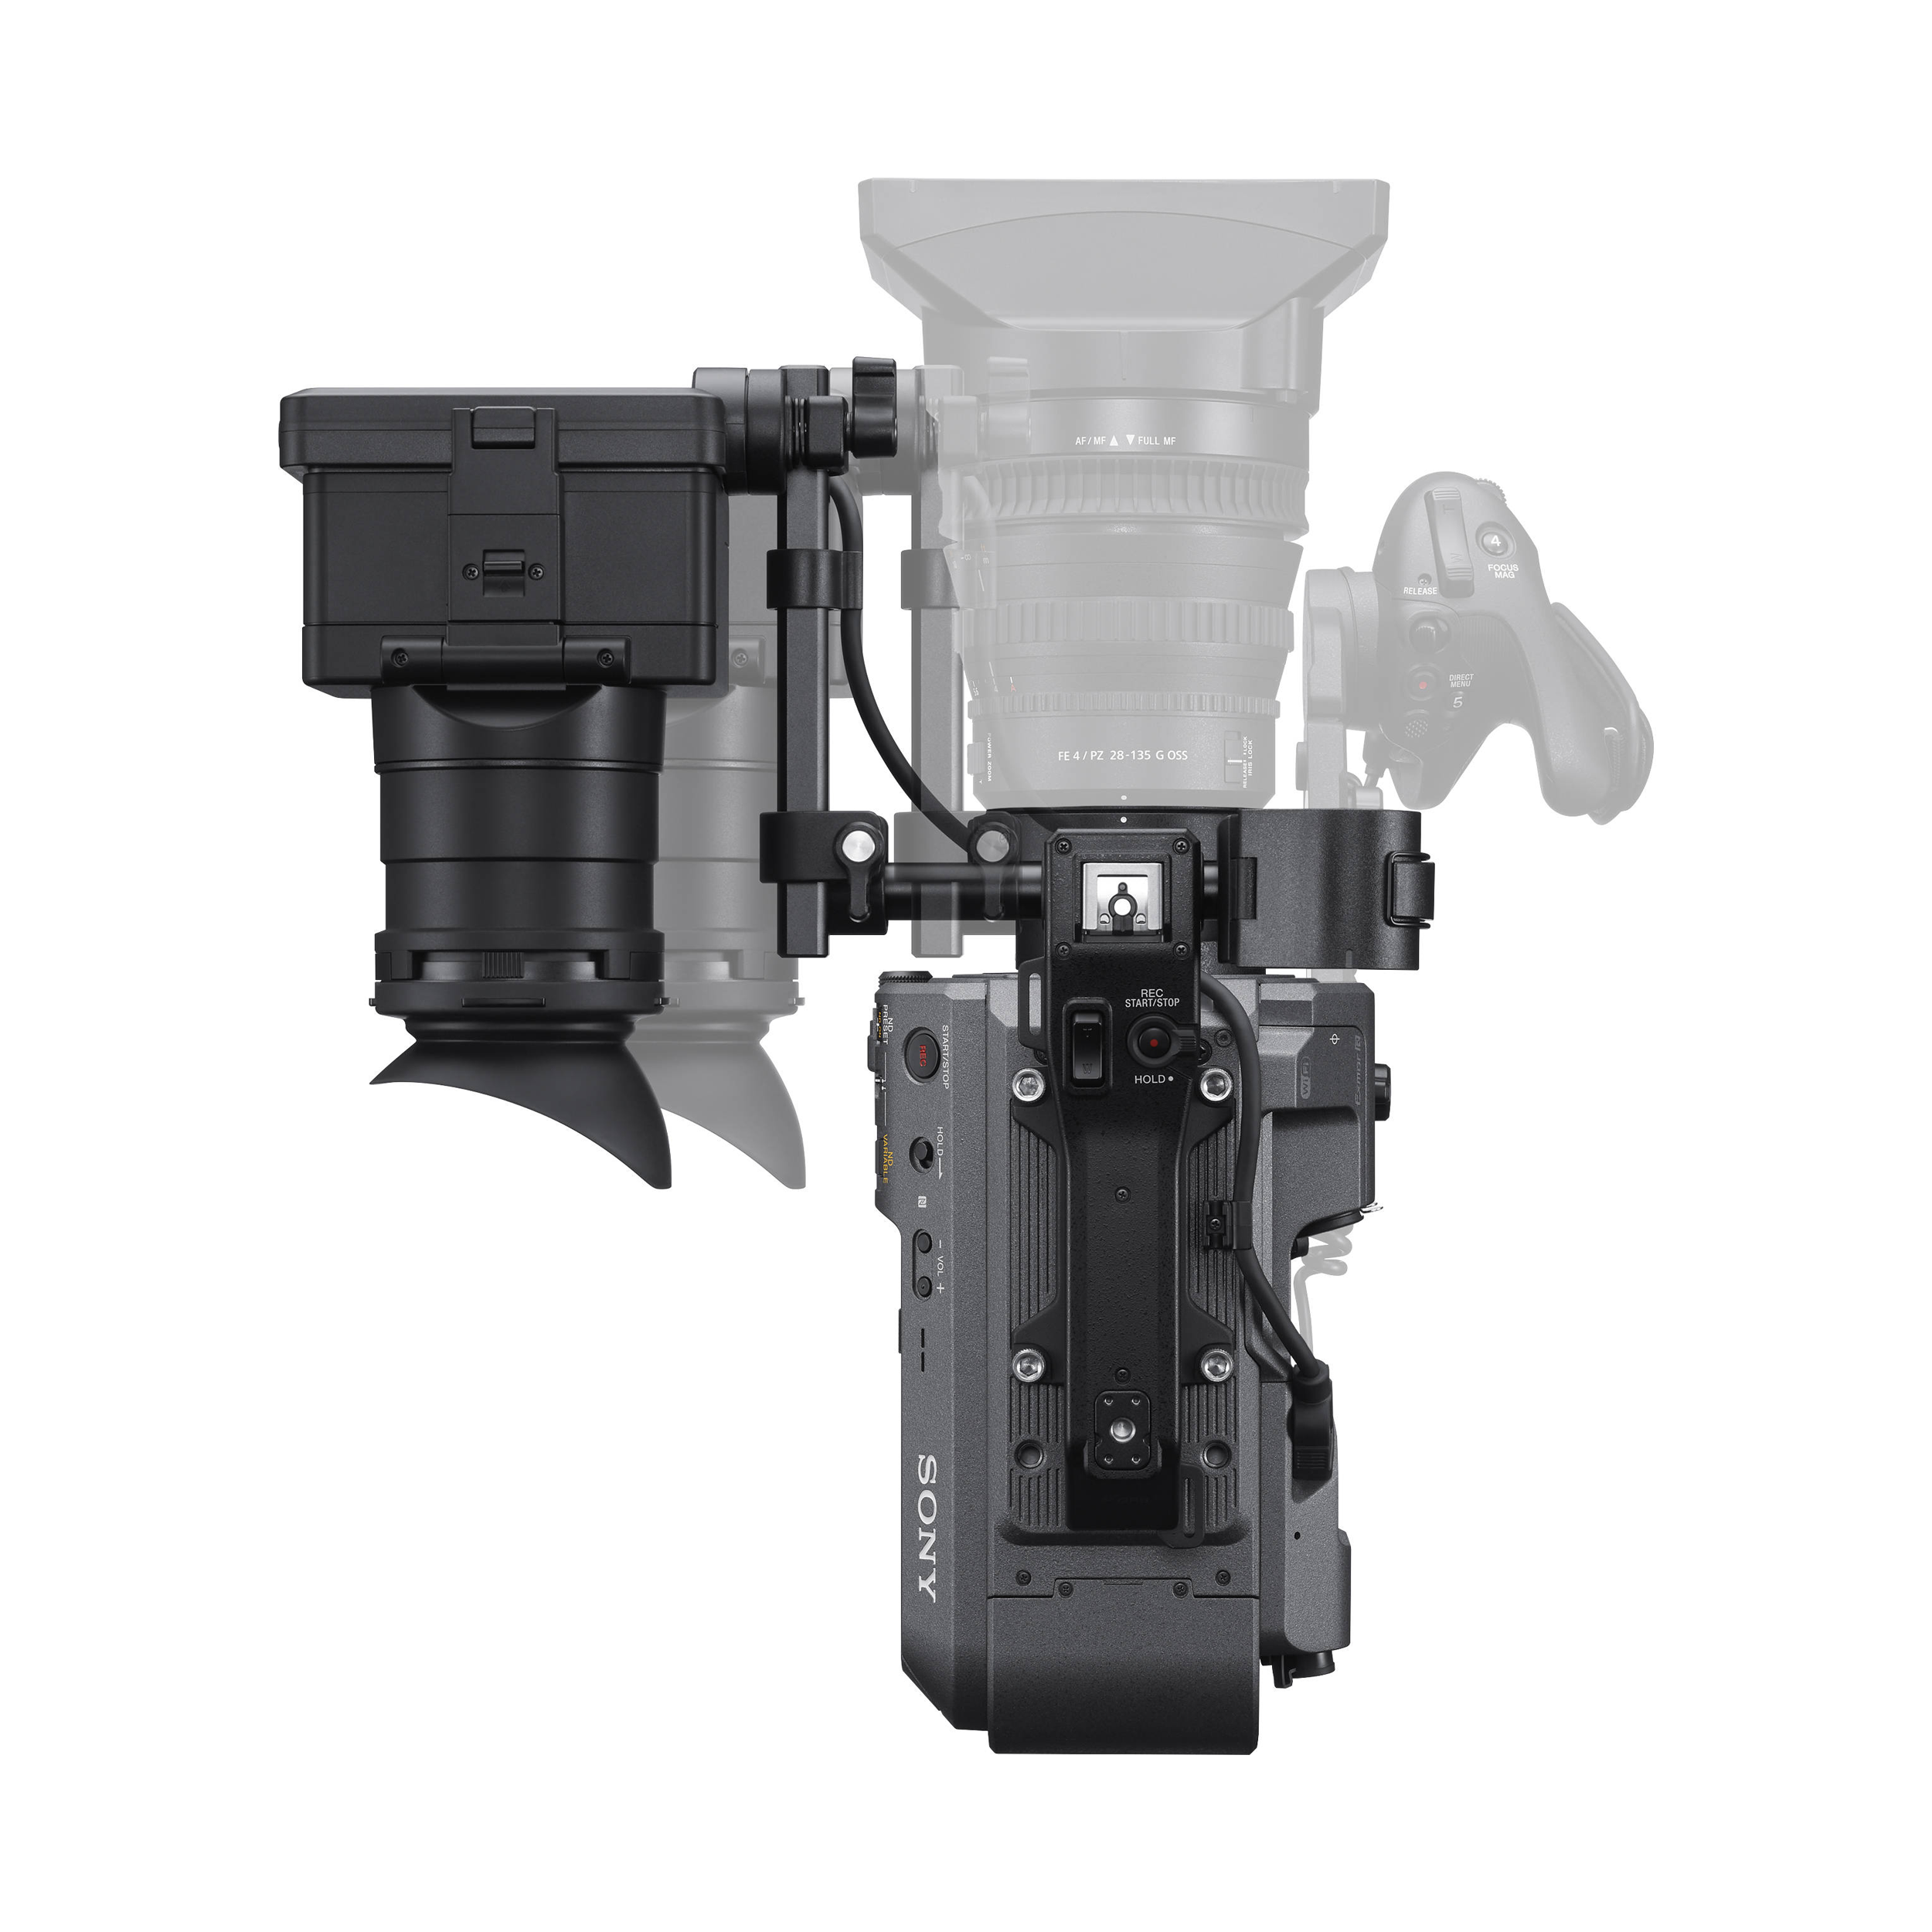 Système de caméra complet de Sony PXW-FX9 XDCAM 6K - Boîtier Seulement